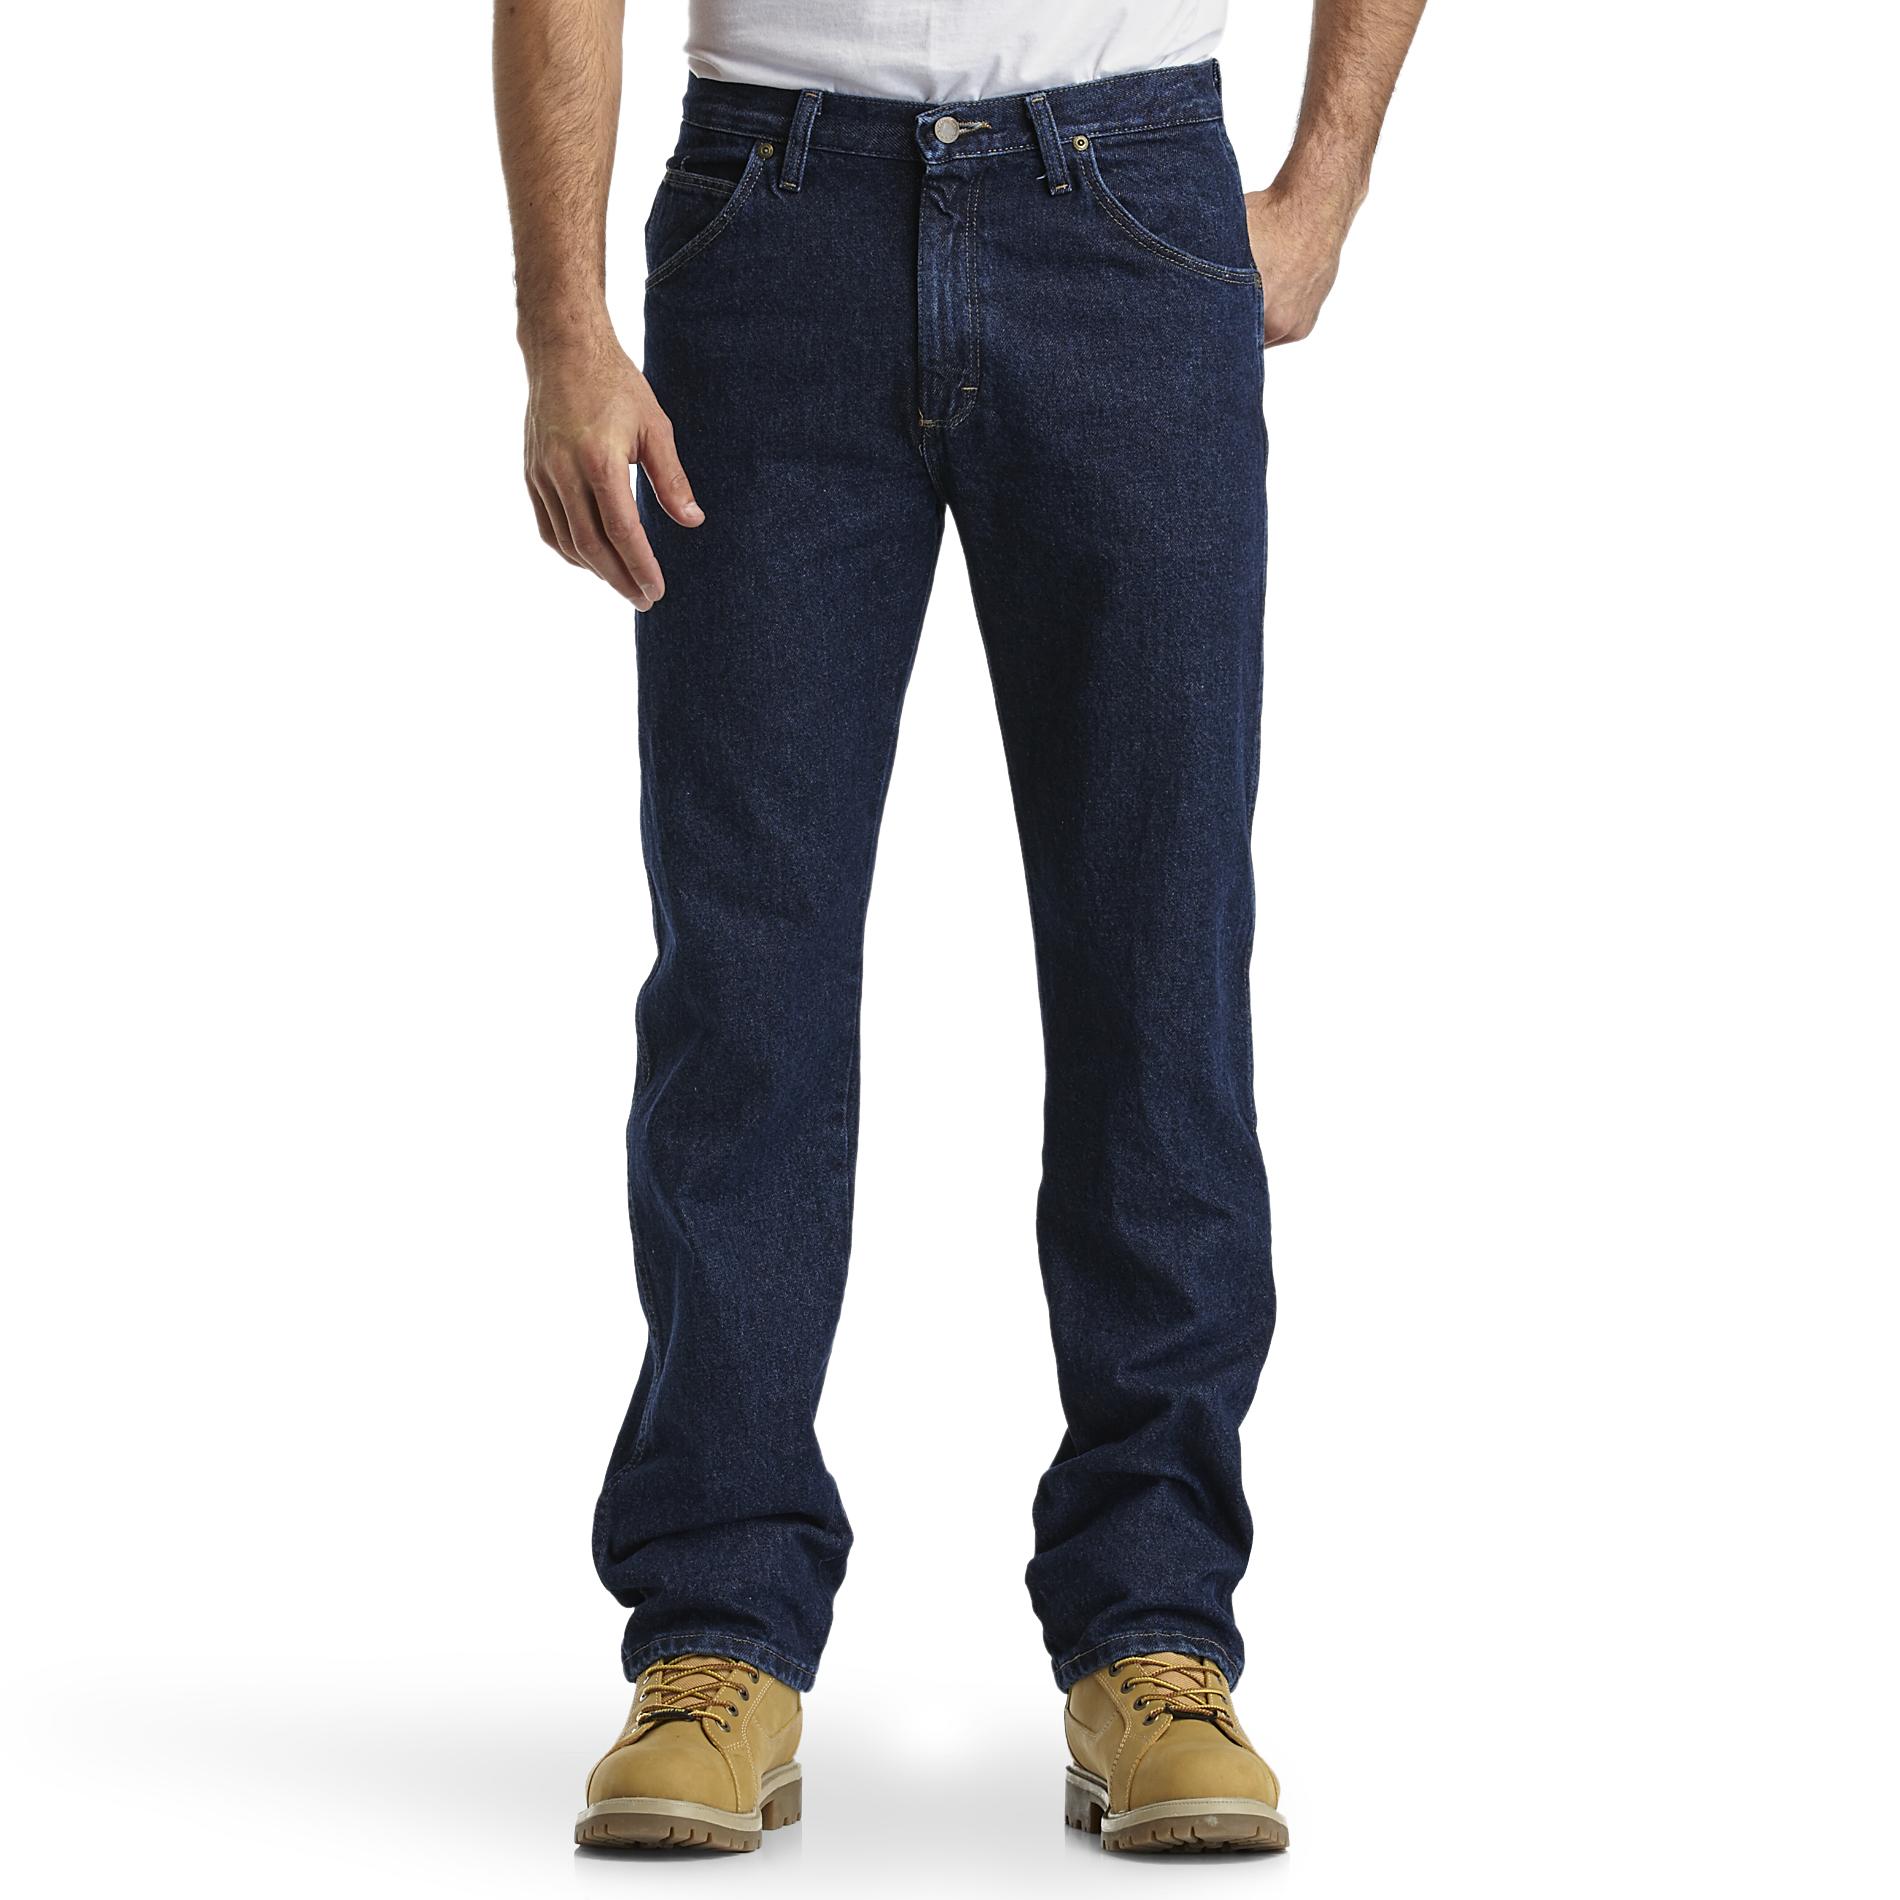 Wrangler Men's Regular Fit Jeans: Find Traditional Style at Kmart